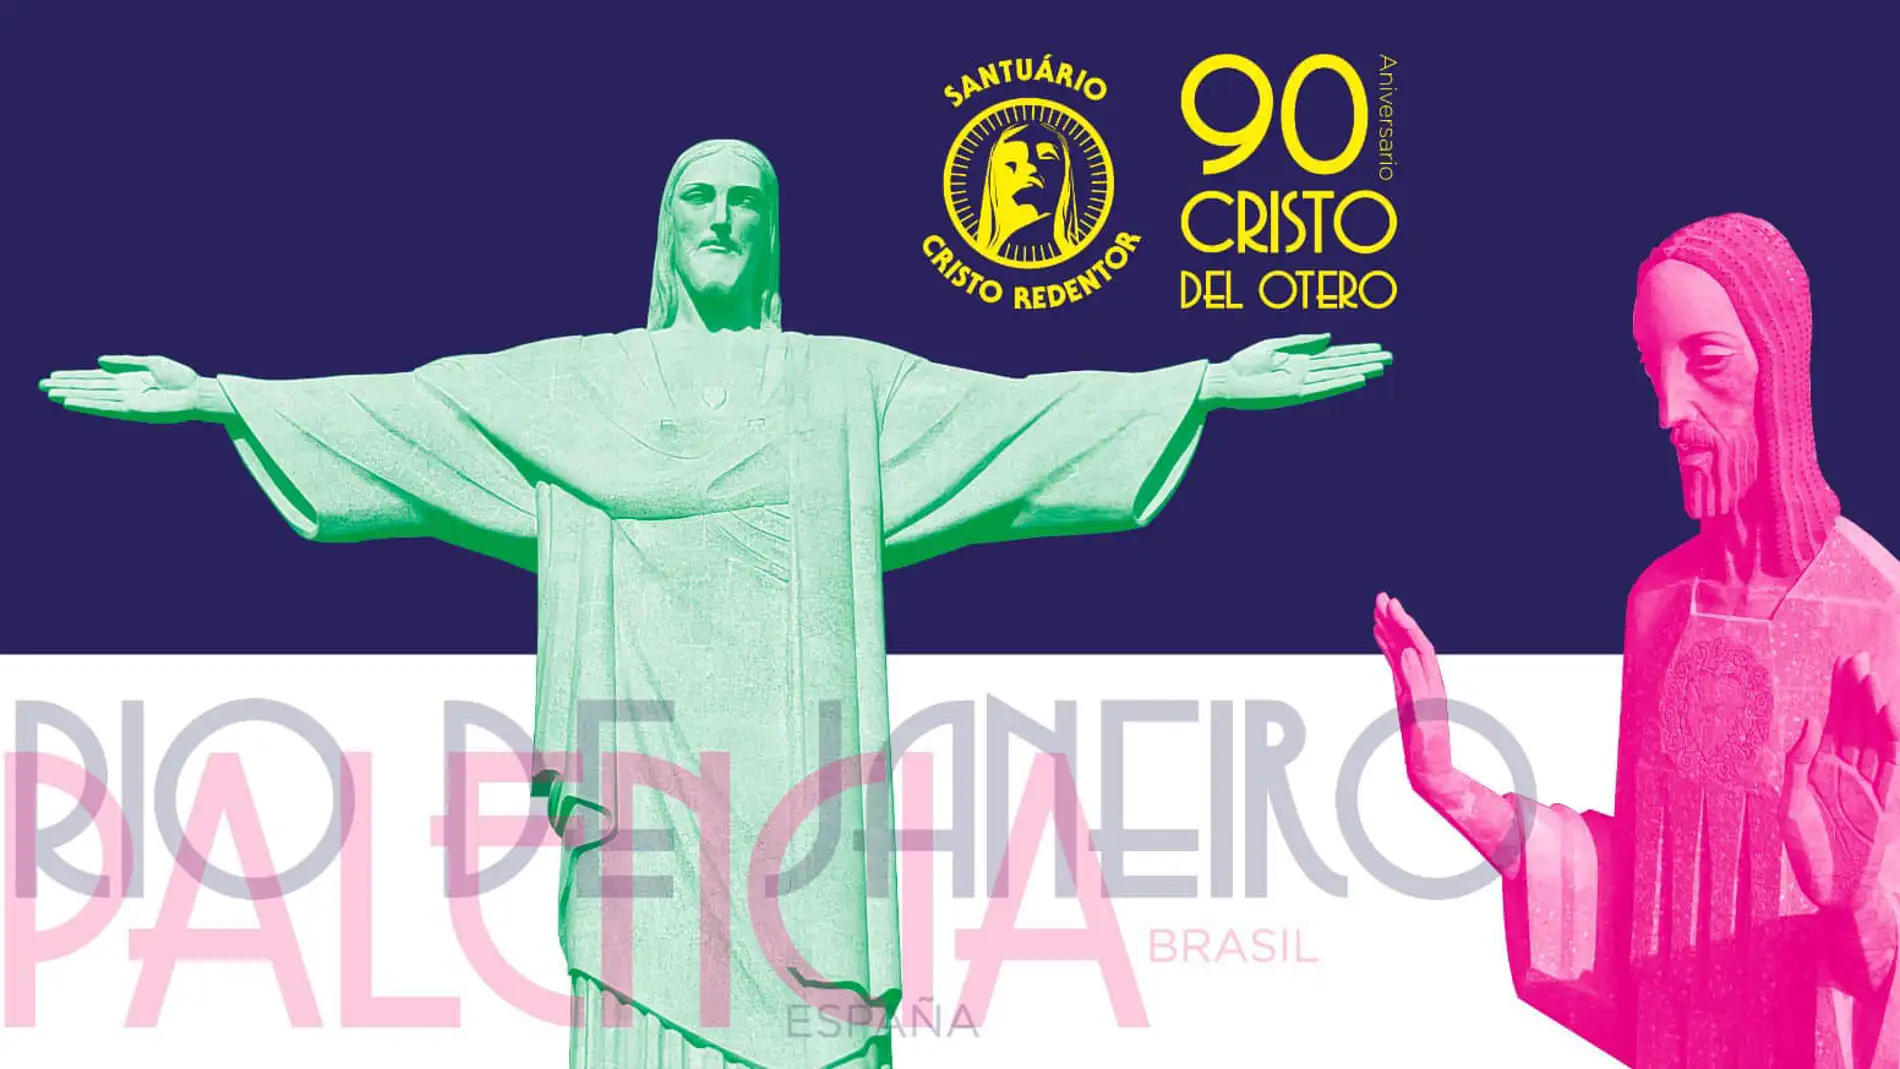 Palencia y Río de Janeiro celebran juntos el 90 aniversario de sus Cristos